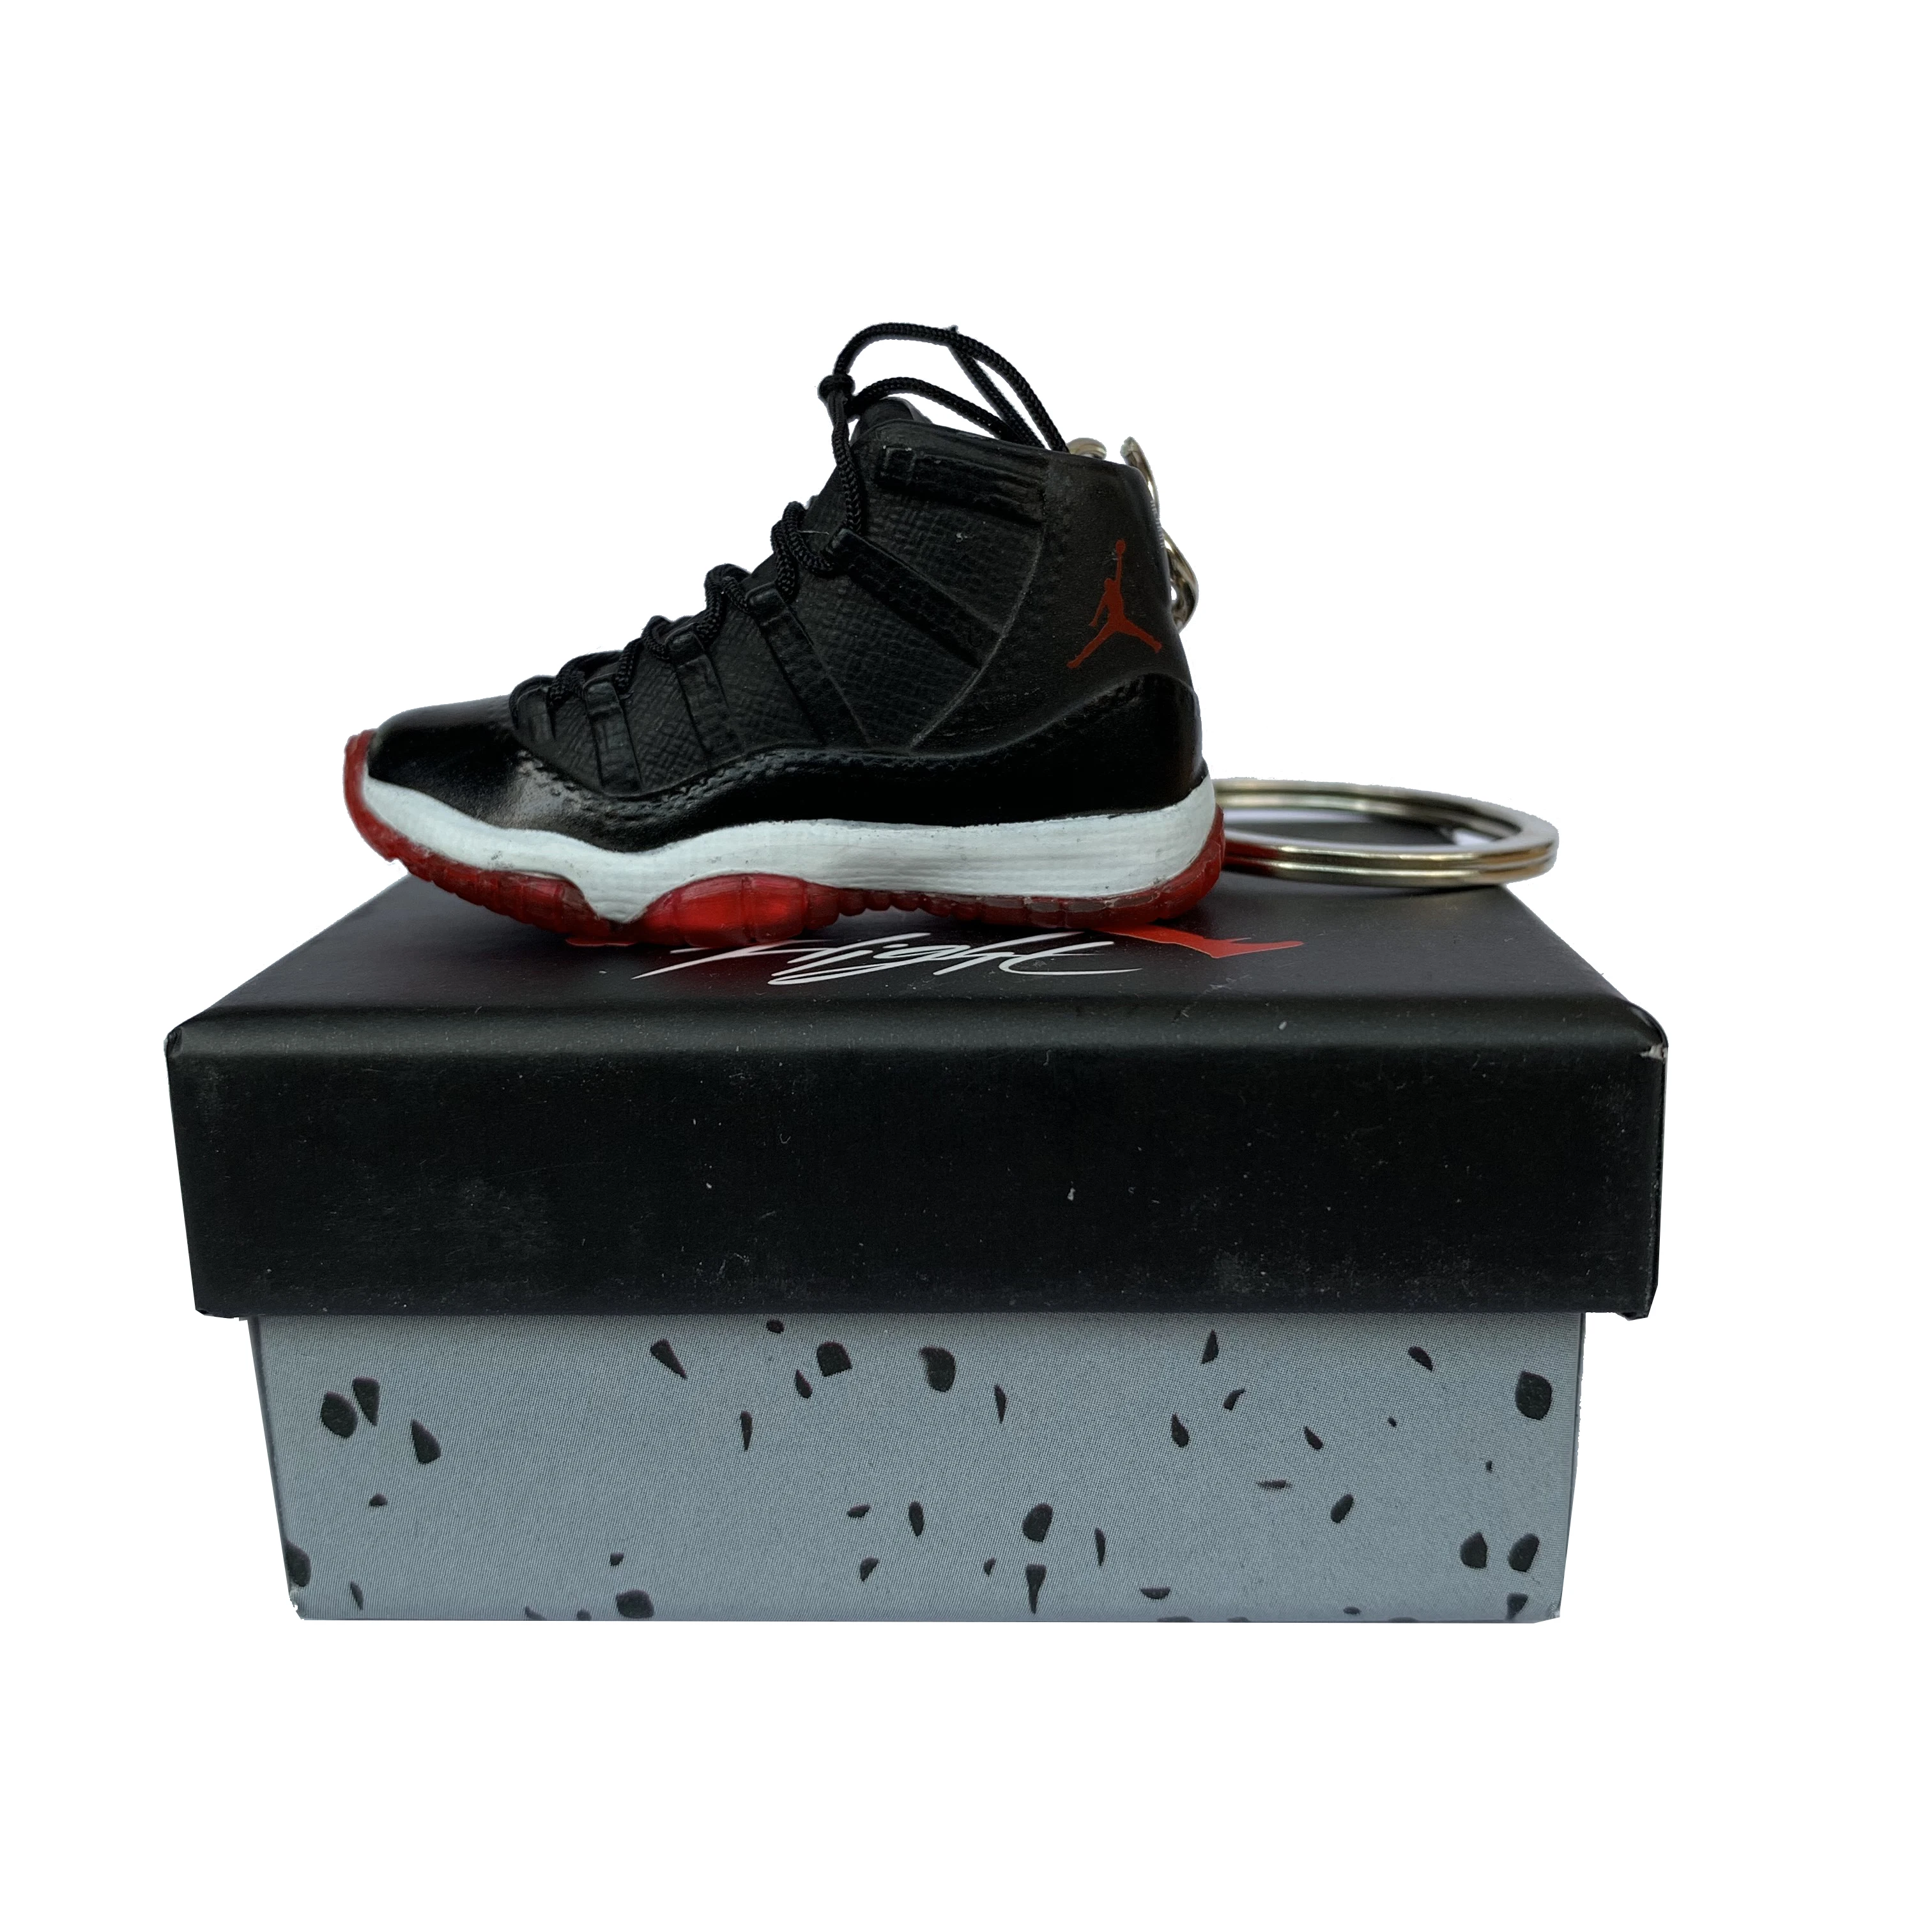 De Zapatos Jordan 3d Con Accesorio De Cordones Reales - Buy De Zapatos Jordan De Modelos 3d,Llaveros De Zapatos 3d Blancos Product on